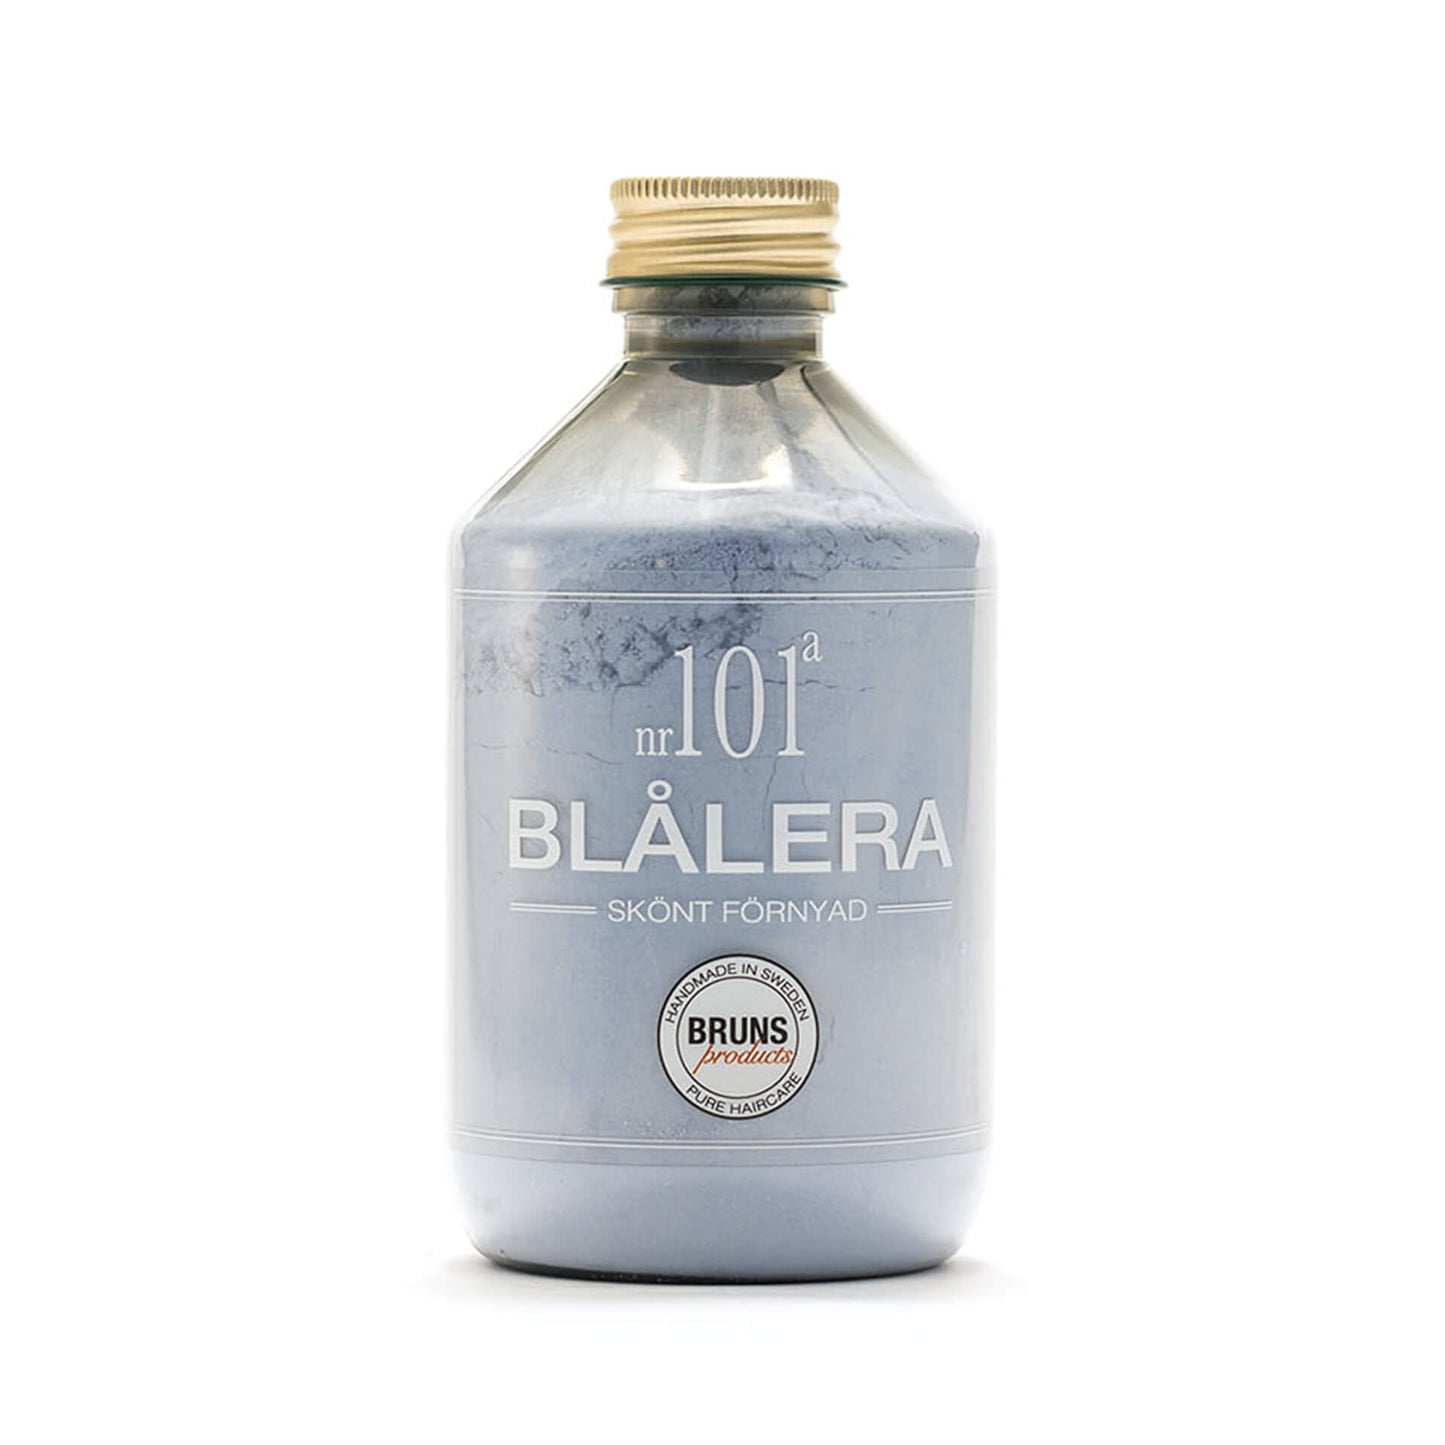 BLÅLERA Nº101